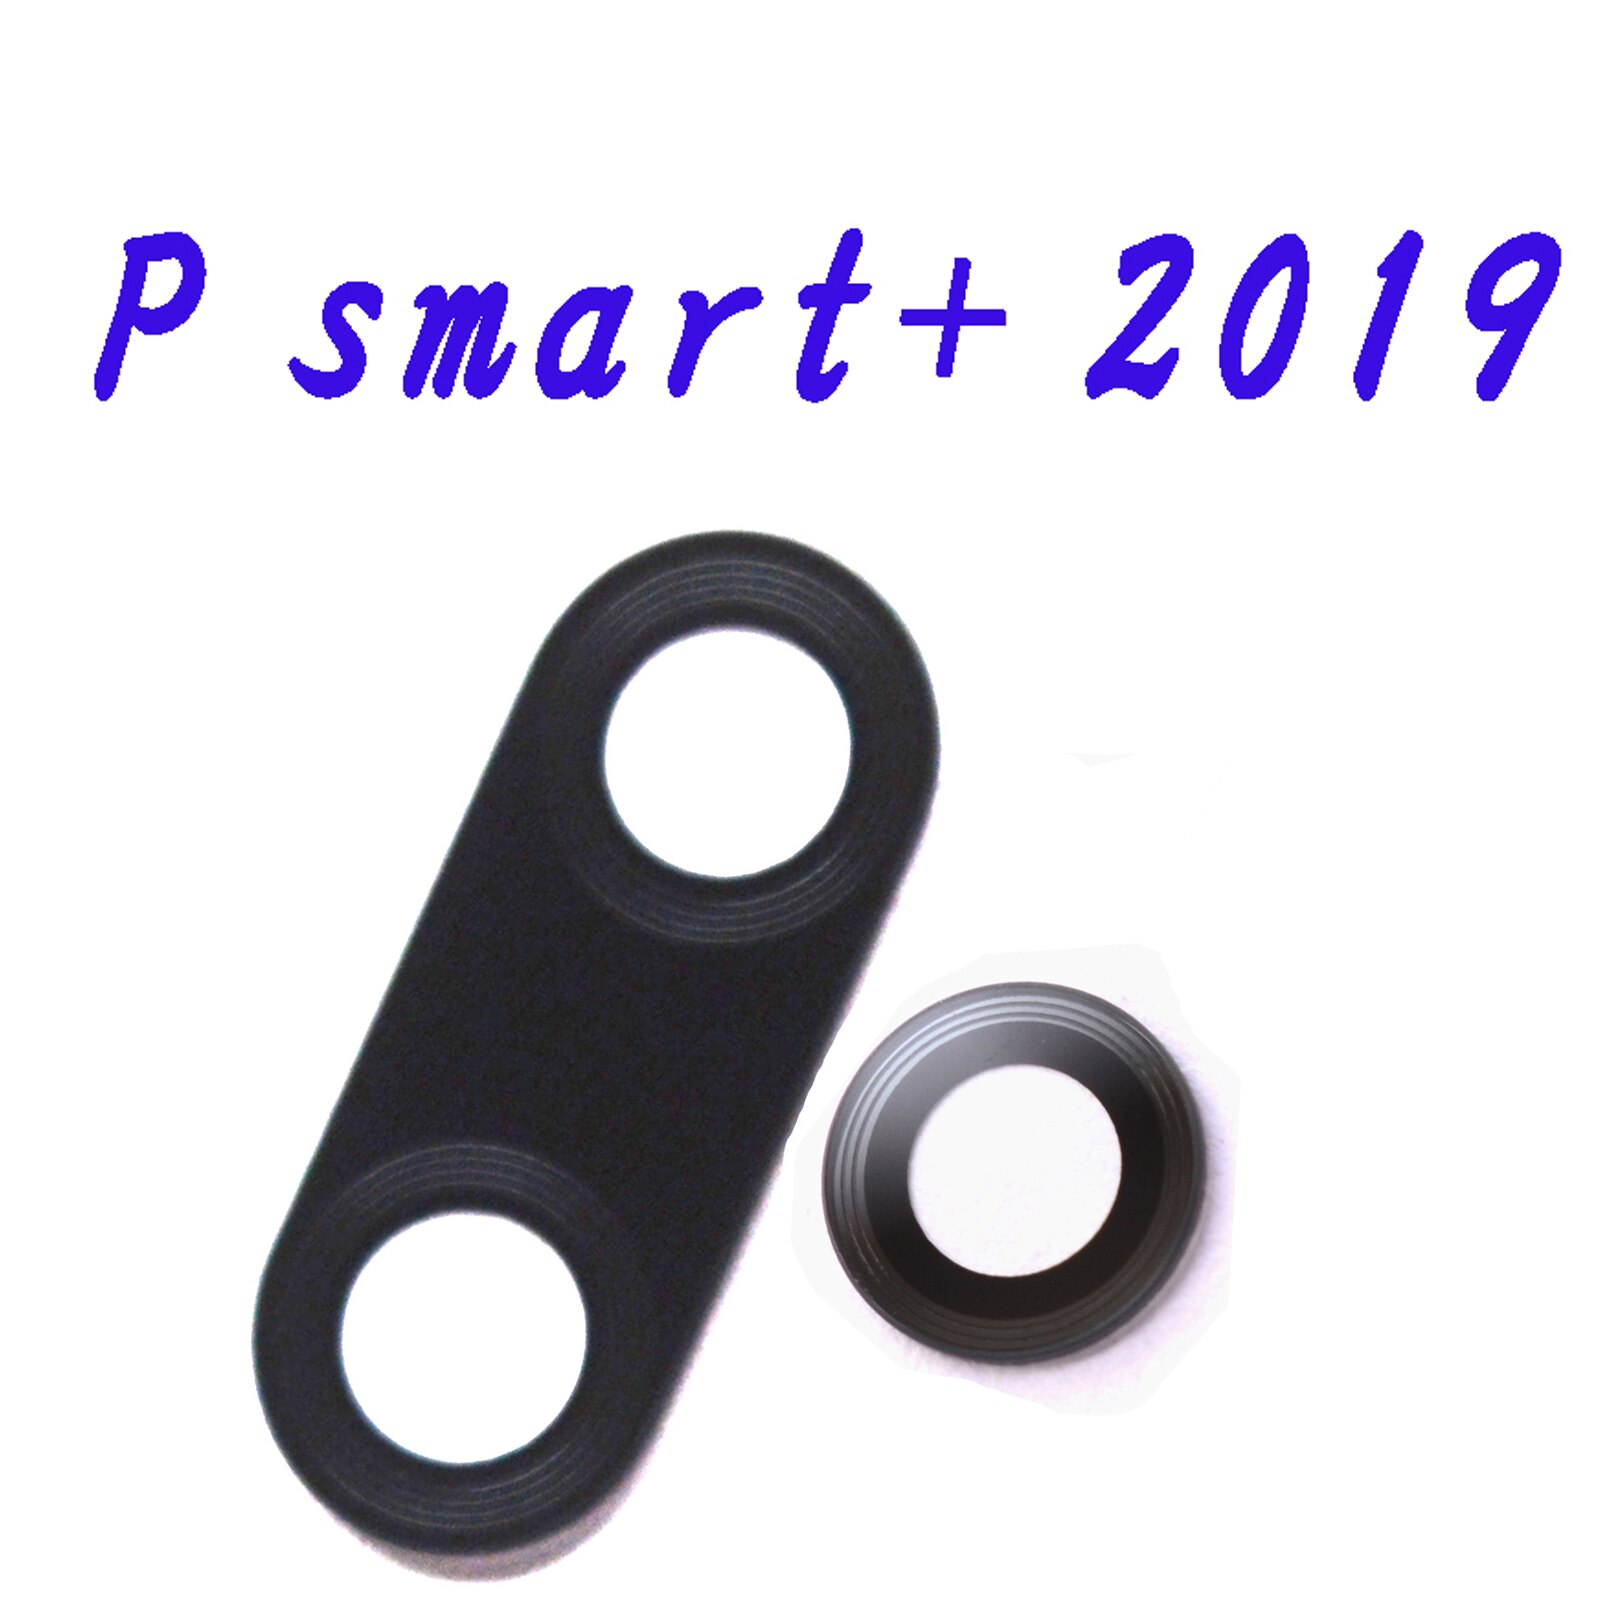 for P smart pro original rear camera glass lens for Huawei P smart + P smart +: P smart plus 2019